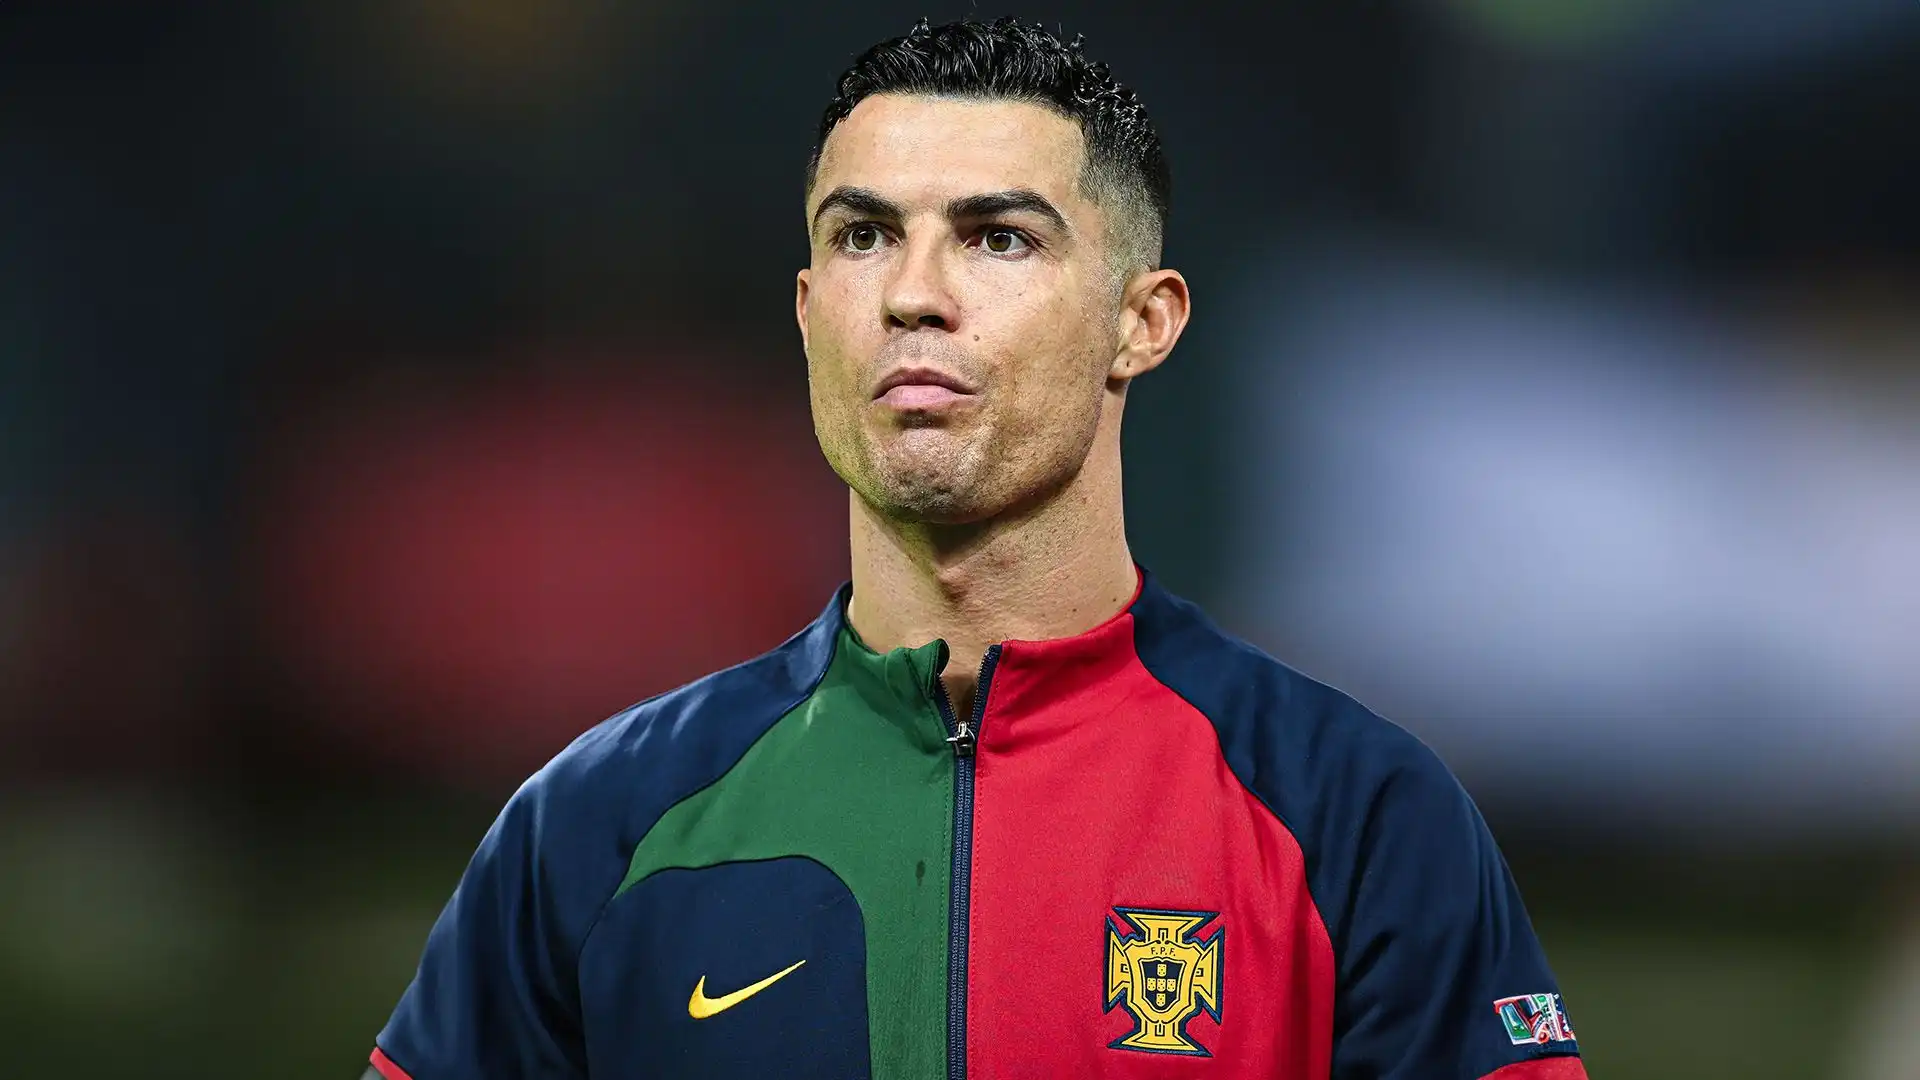 Altro record assoluto per Cristiano Ronaldo, che scrive nuovamente la storia del calcio